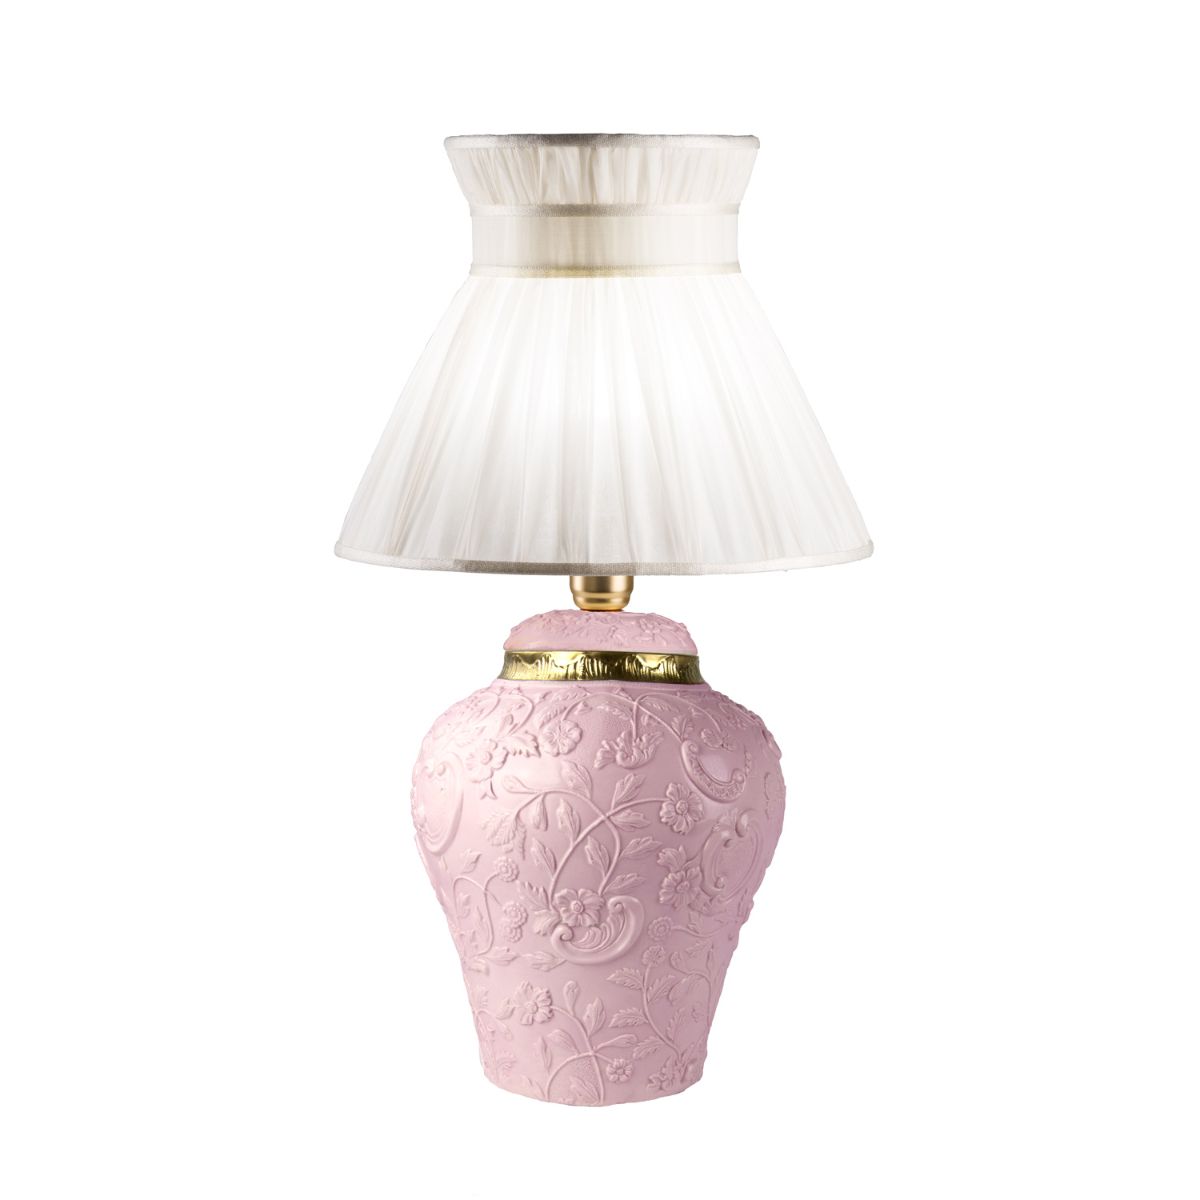 Taormina Small Table Lamp - Pink &amp; Gold 